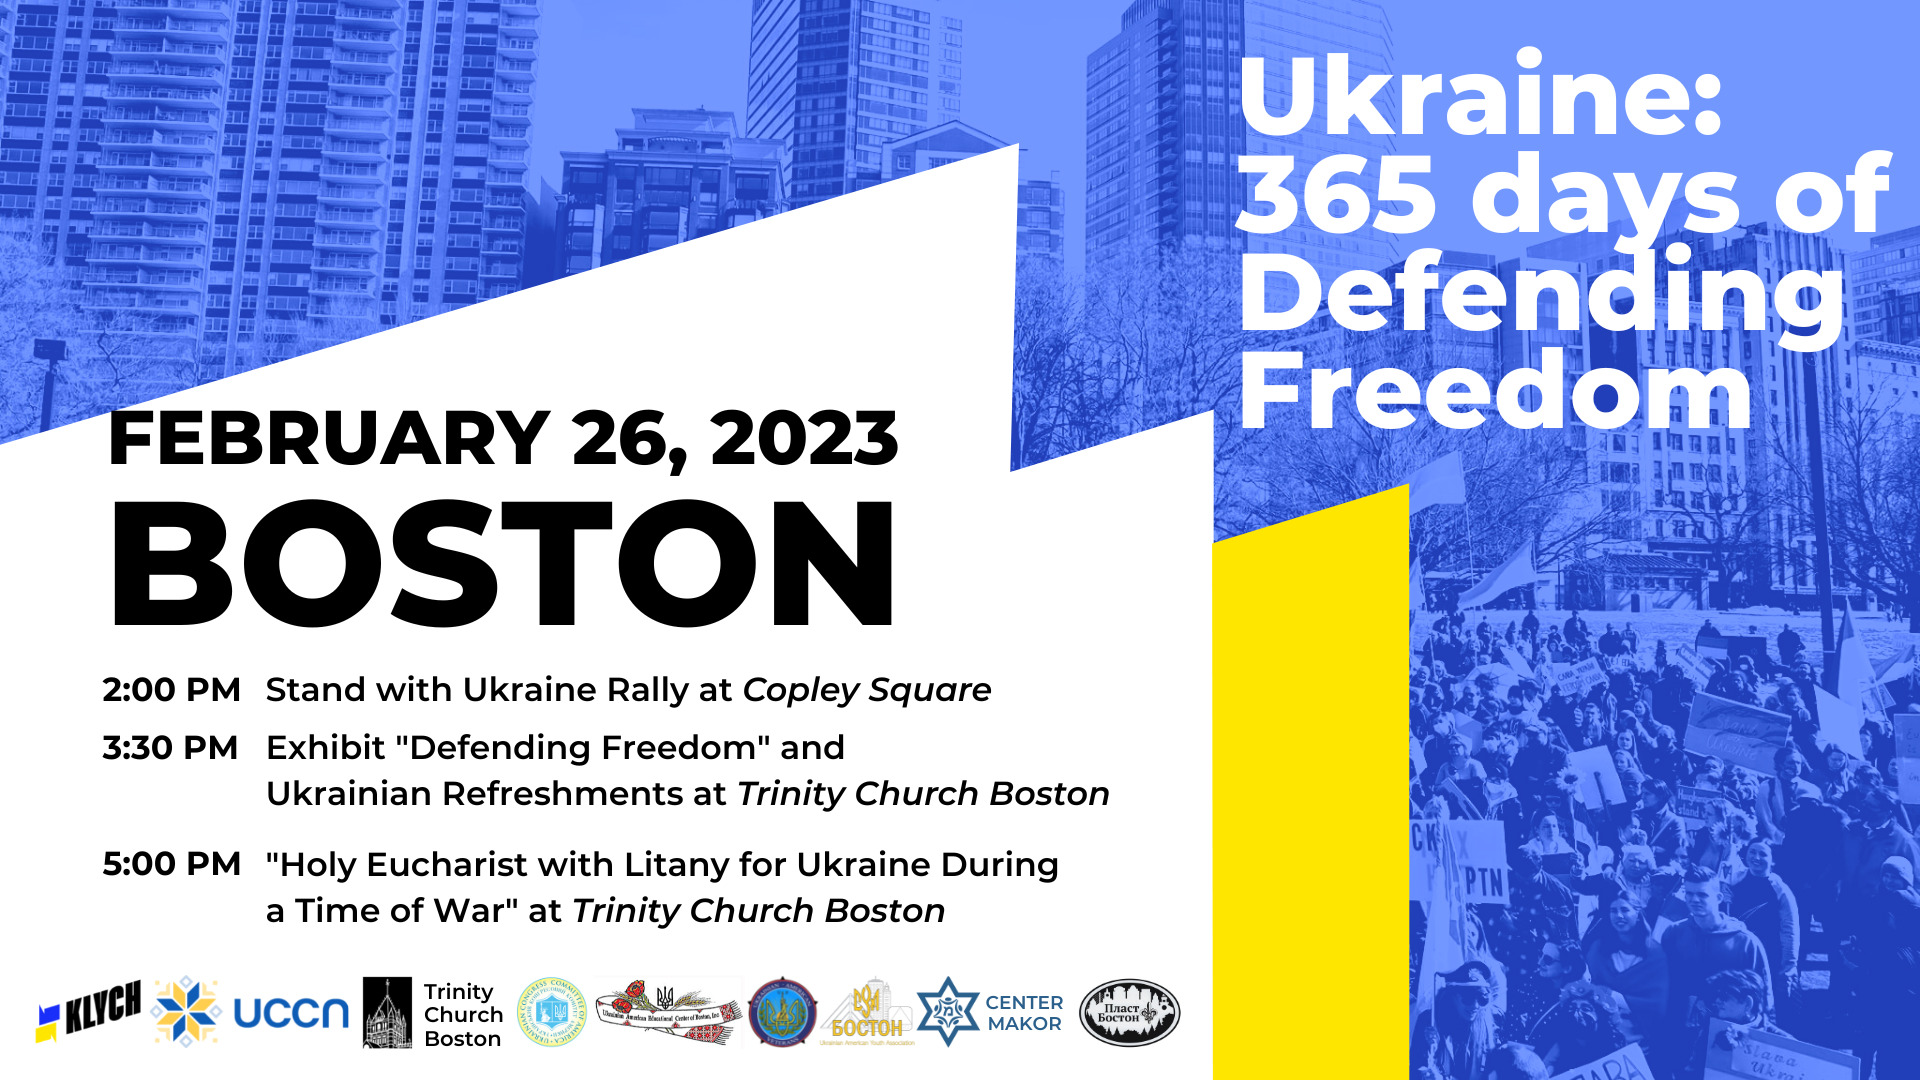 Ukraine 365 days of Defending Freedom